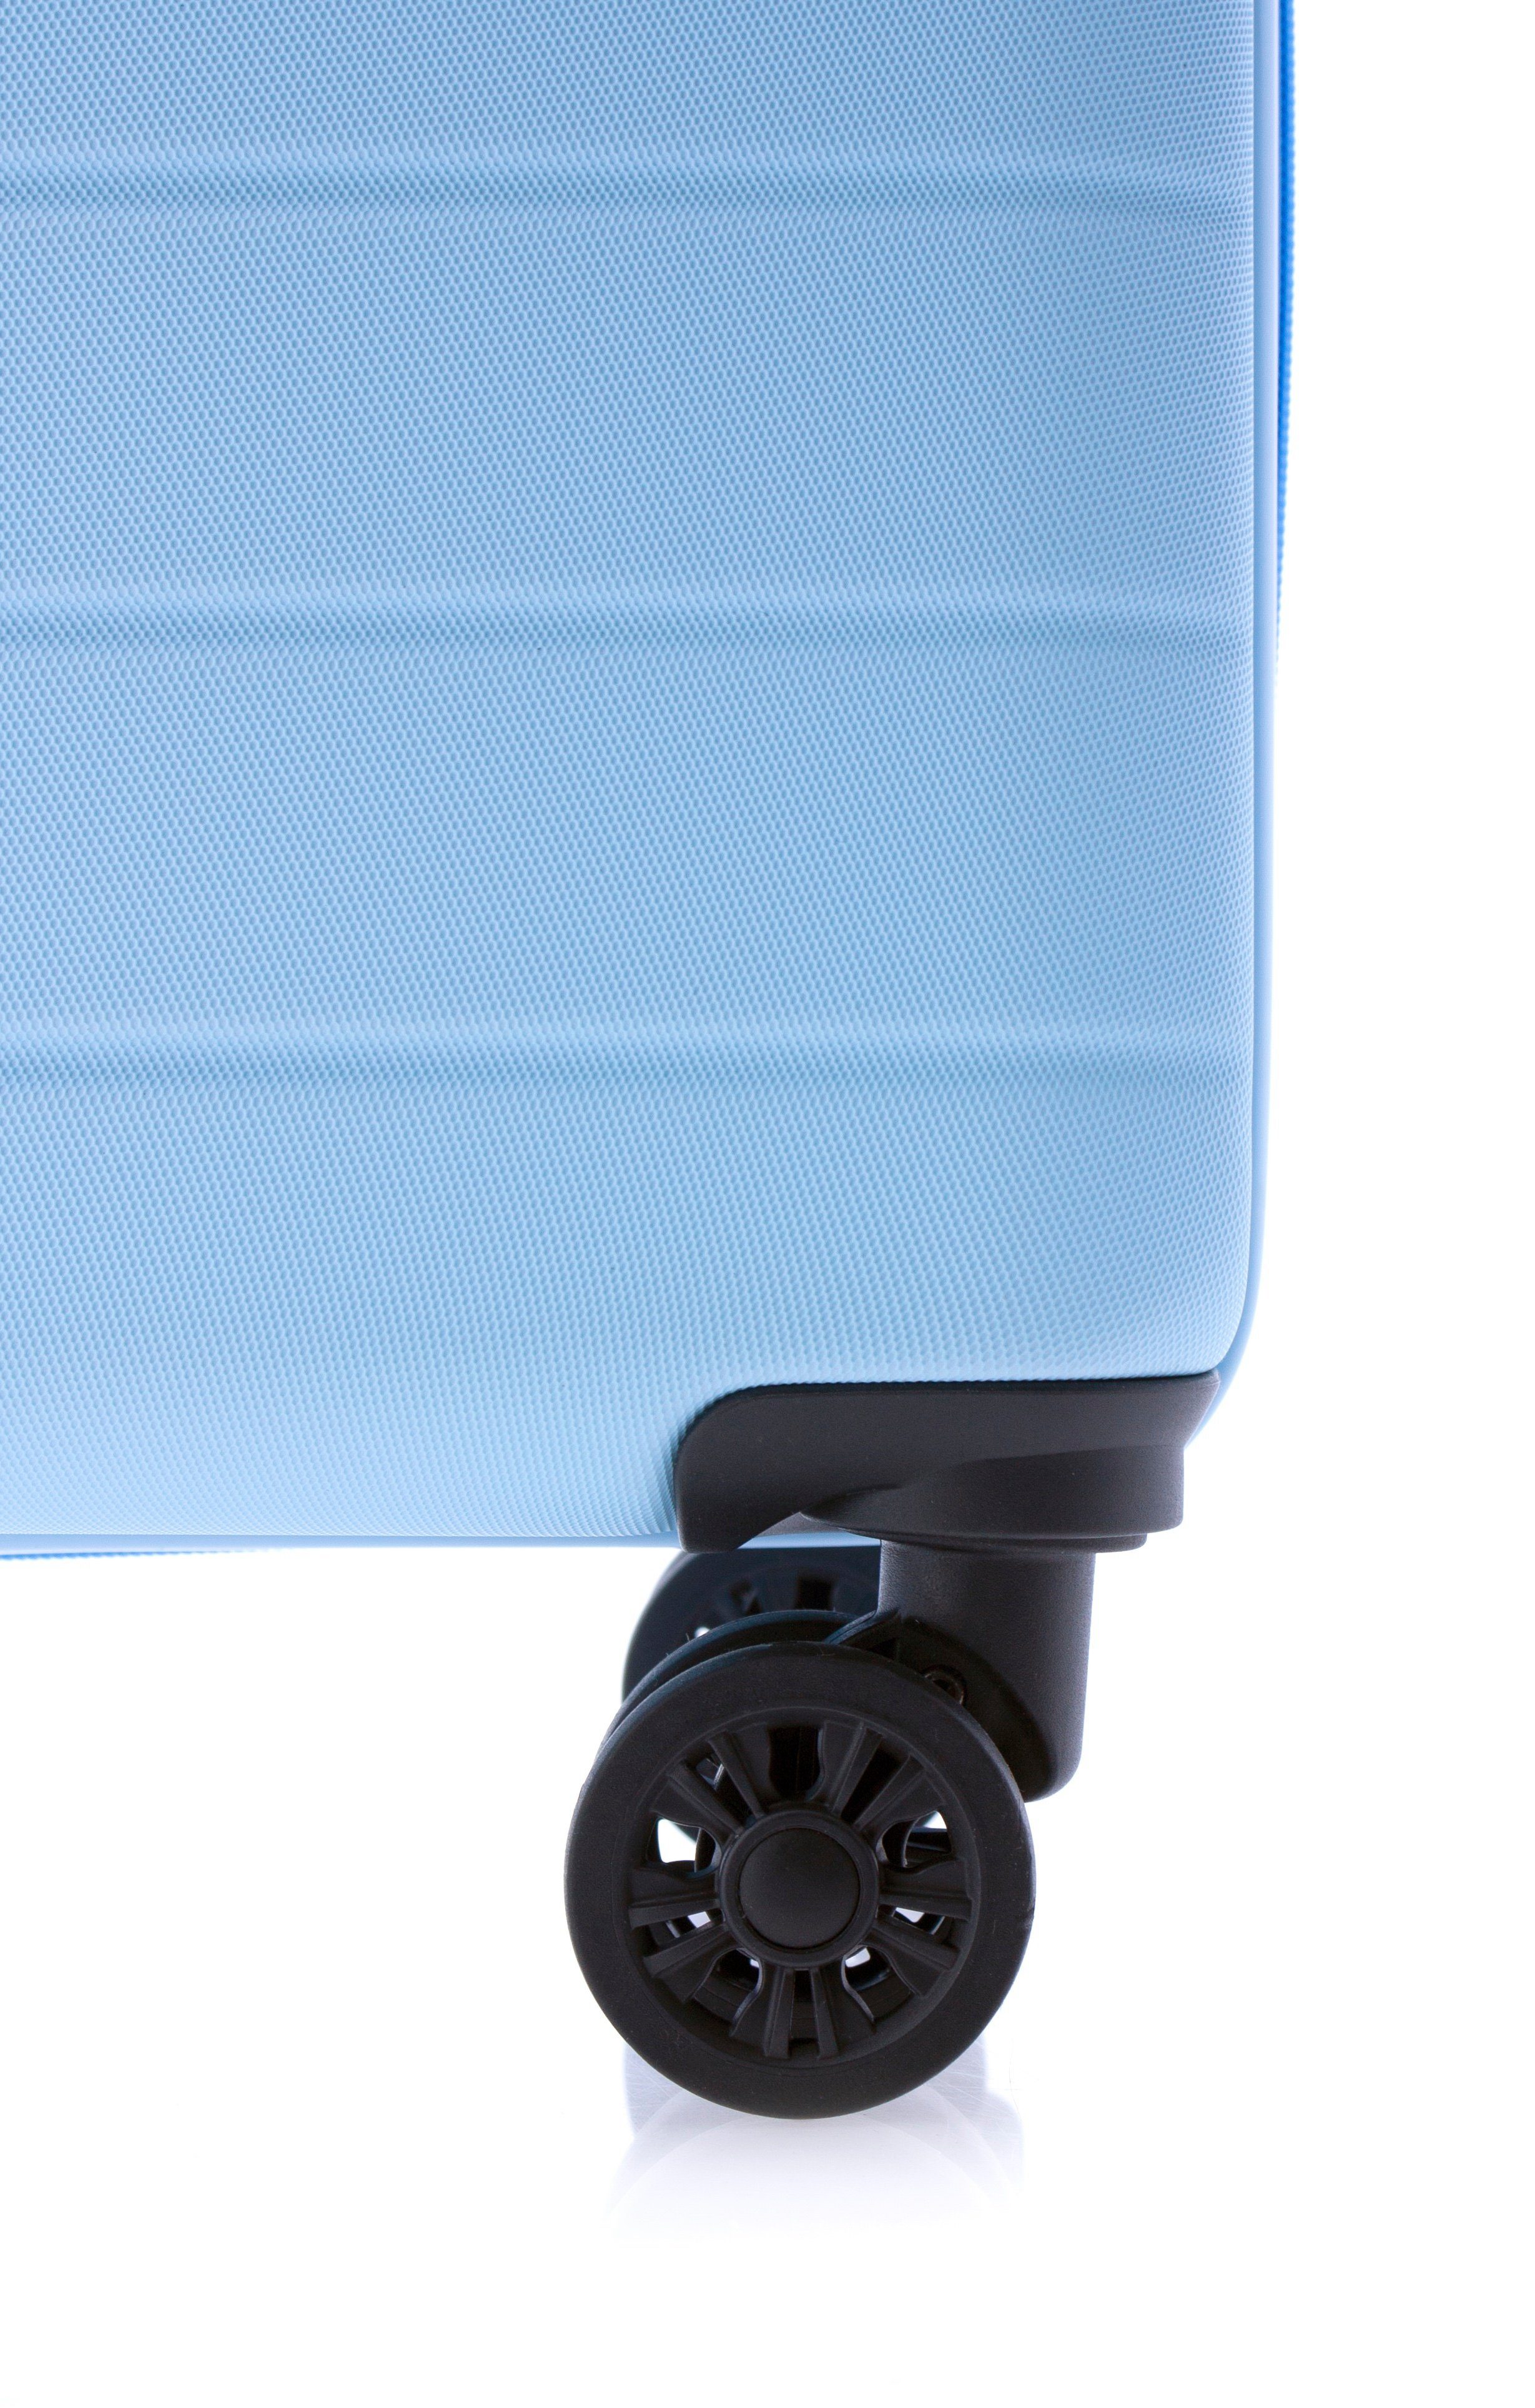 GLADIATOR Handgepäck-Trolley Koffer - Farben: blau, rot, cm, Volumen: Dehnfalte, 4 Liter, hellblau, minzgrün, 36/40 Rollen, schwarz, TSA-Schloss, gelb 55